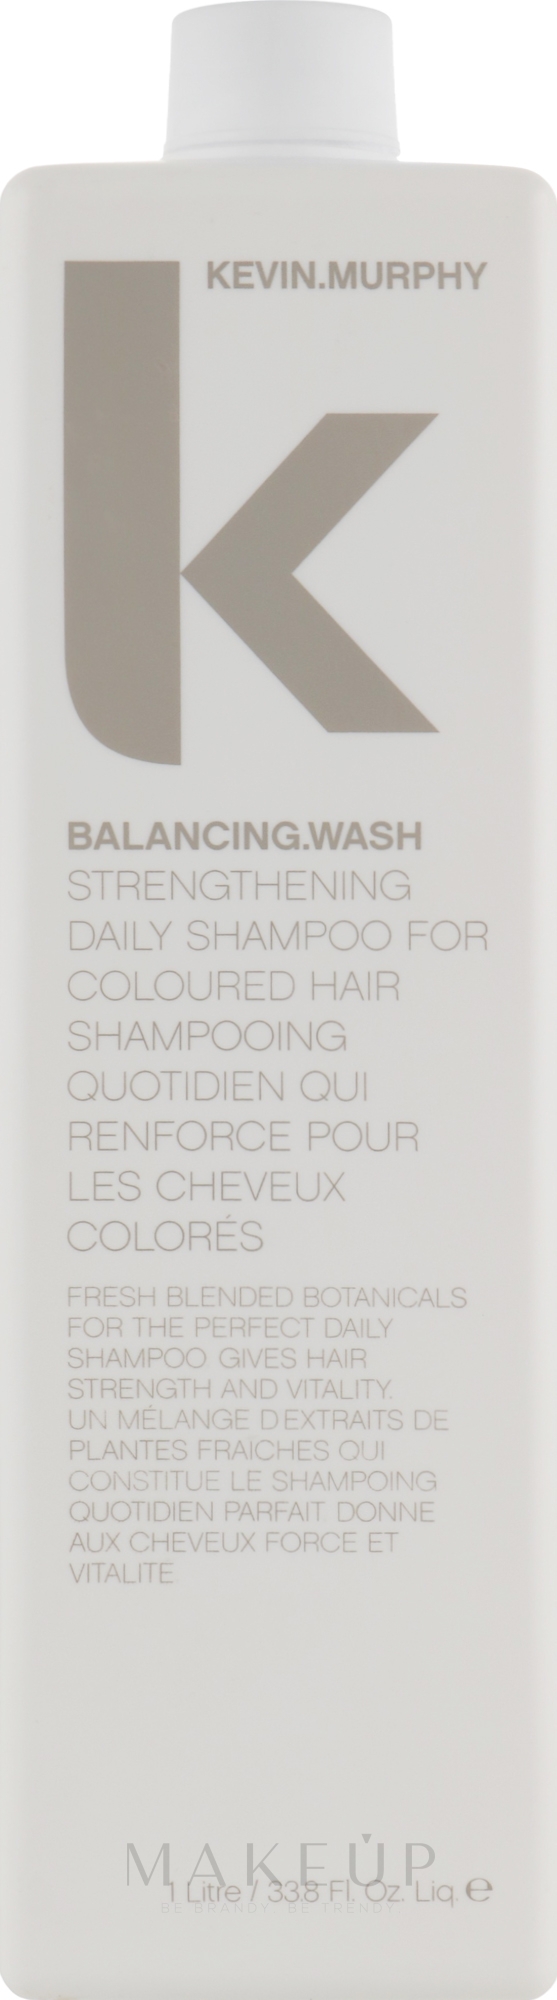 Stärkendes Shampoo für den täglichen Gebrauch - Kevin.Murphy Balancing.Wash — Bild 1000 ml